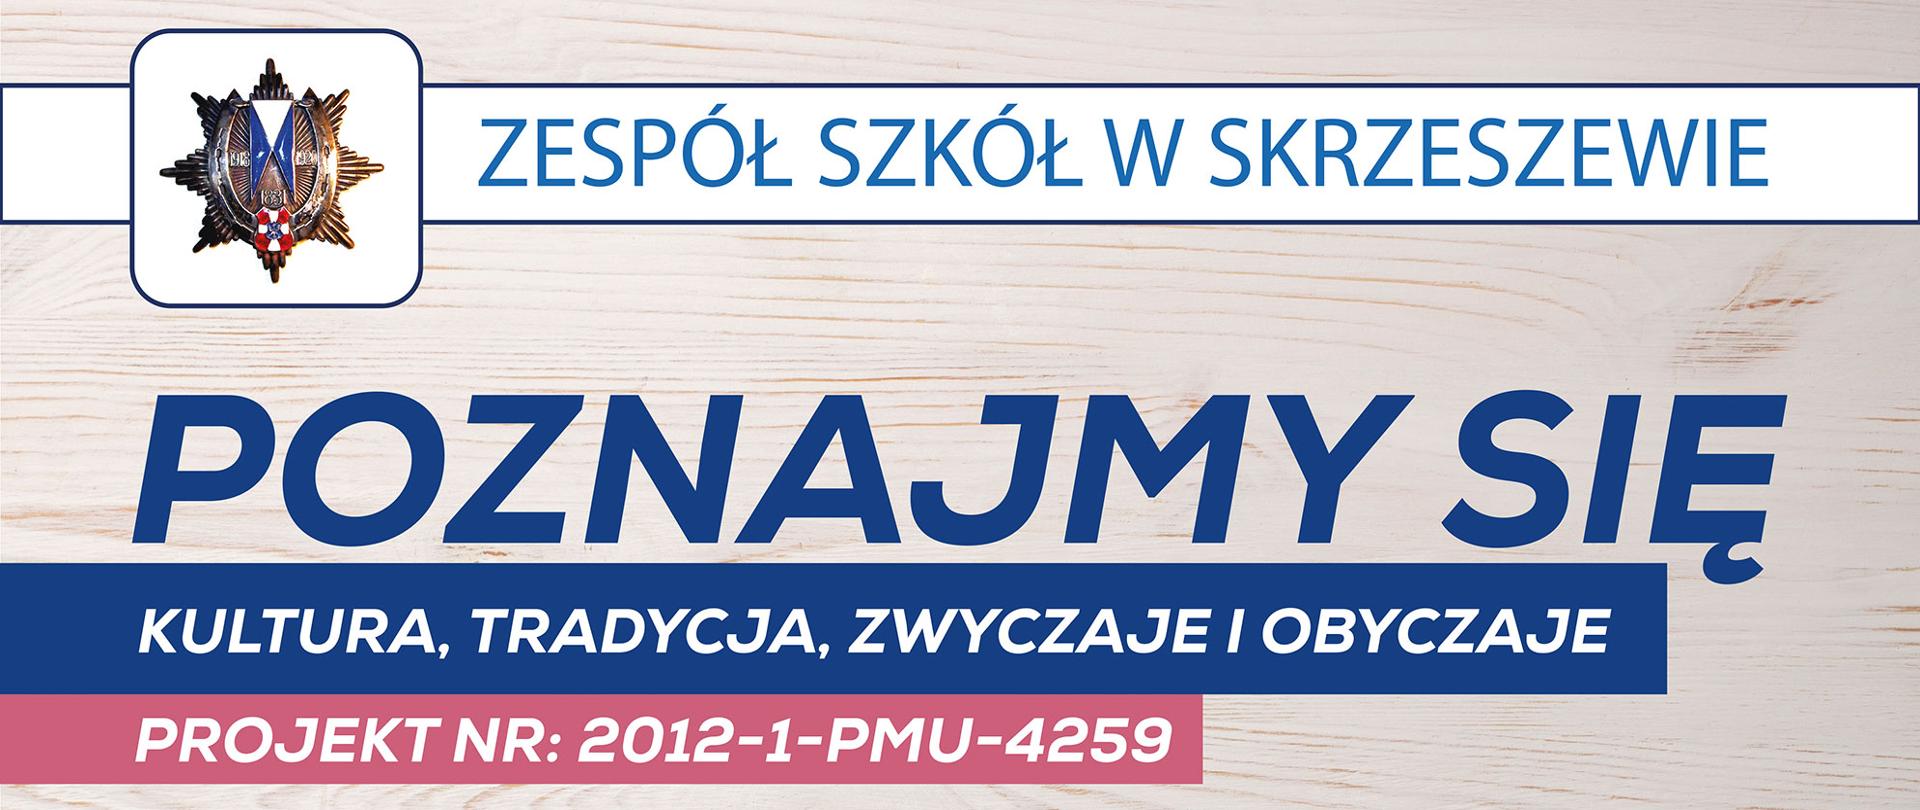 Zespół Szkół w Skrzeszewie, Poznajmy się, Kultura tradycja zwyczaje i obyczaje
Projekt nr: 2012-1-PMU-4259